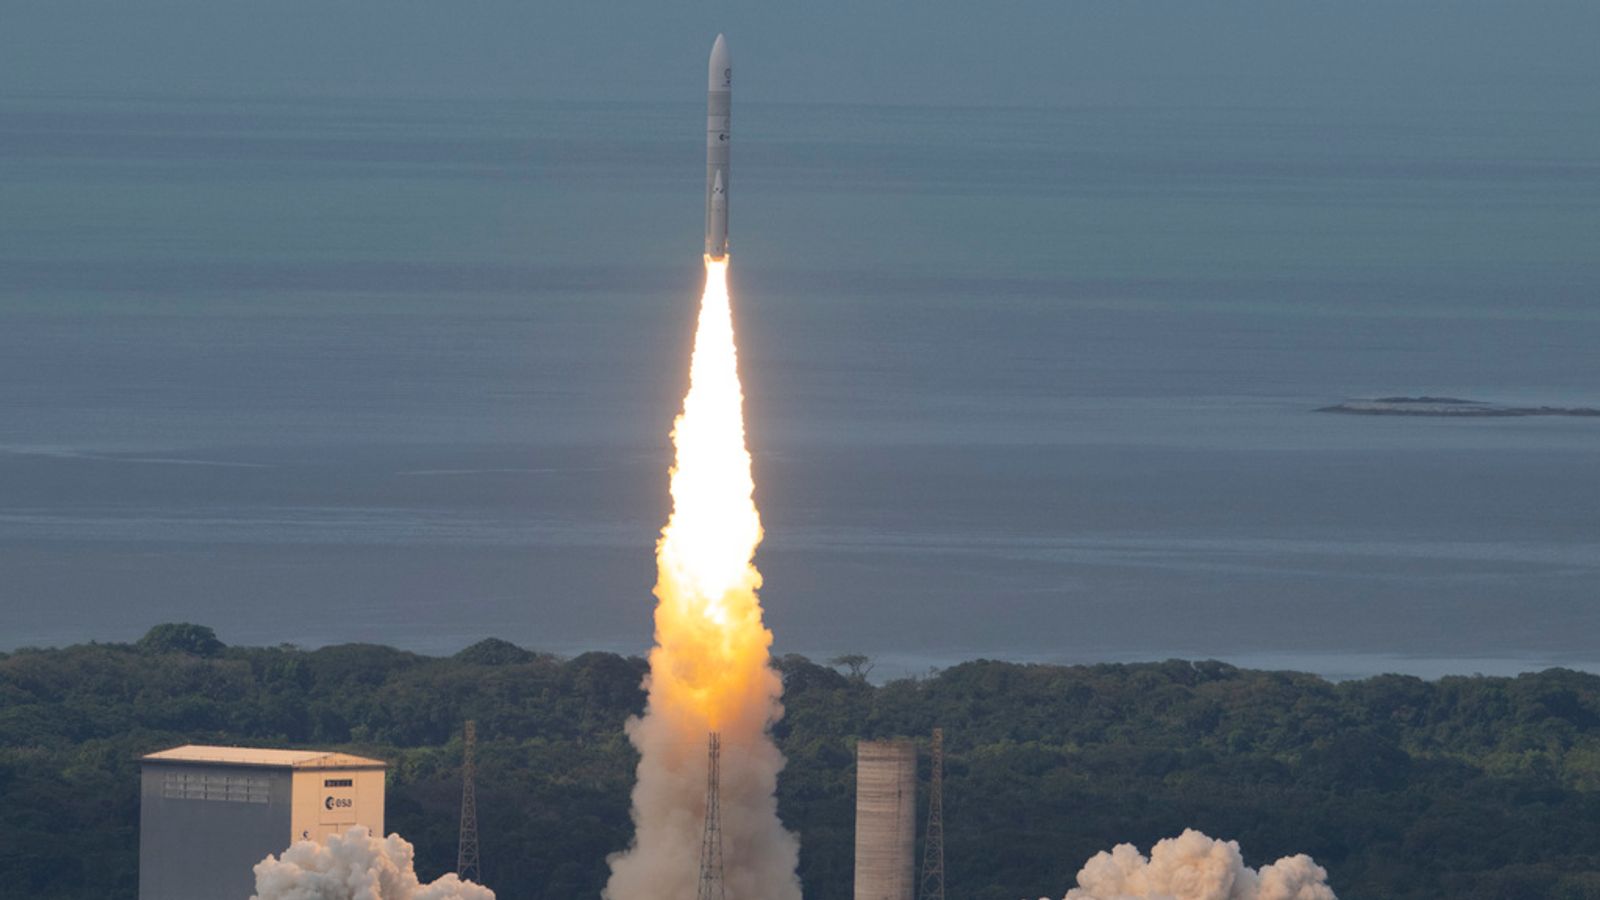 Europe's newest rocket Ariane 6 blasts off in 'historic' maiden voyage